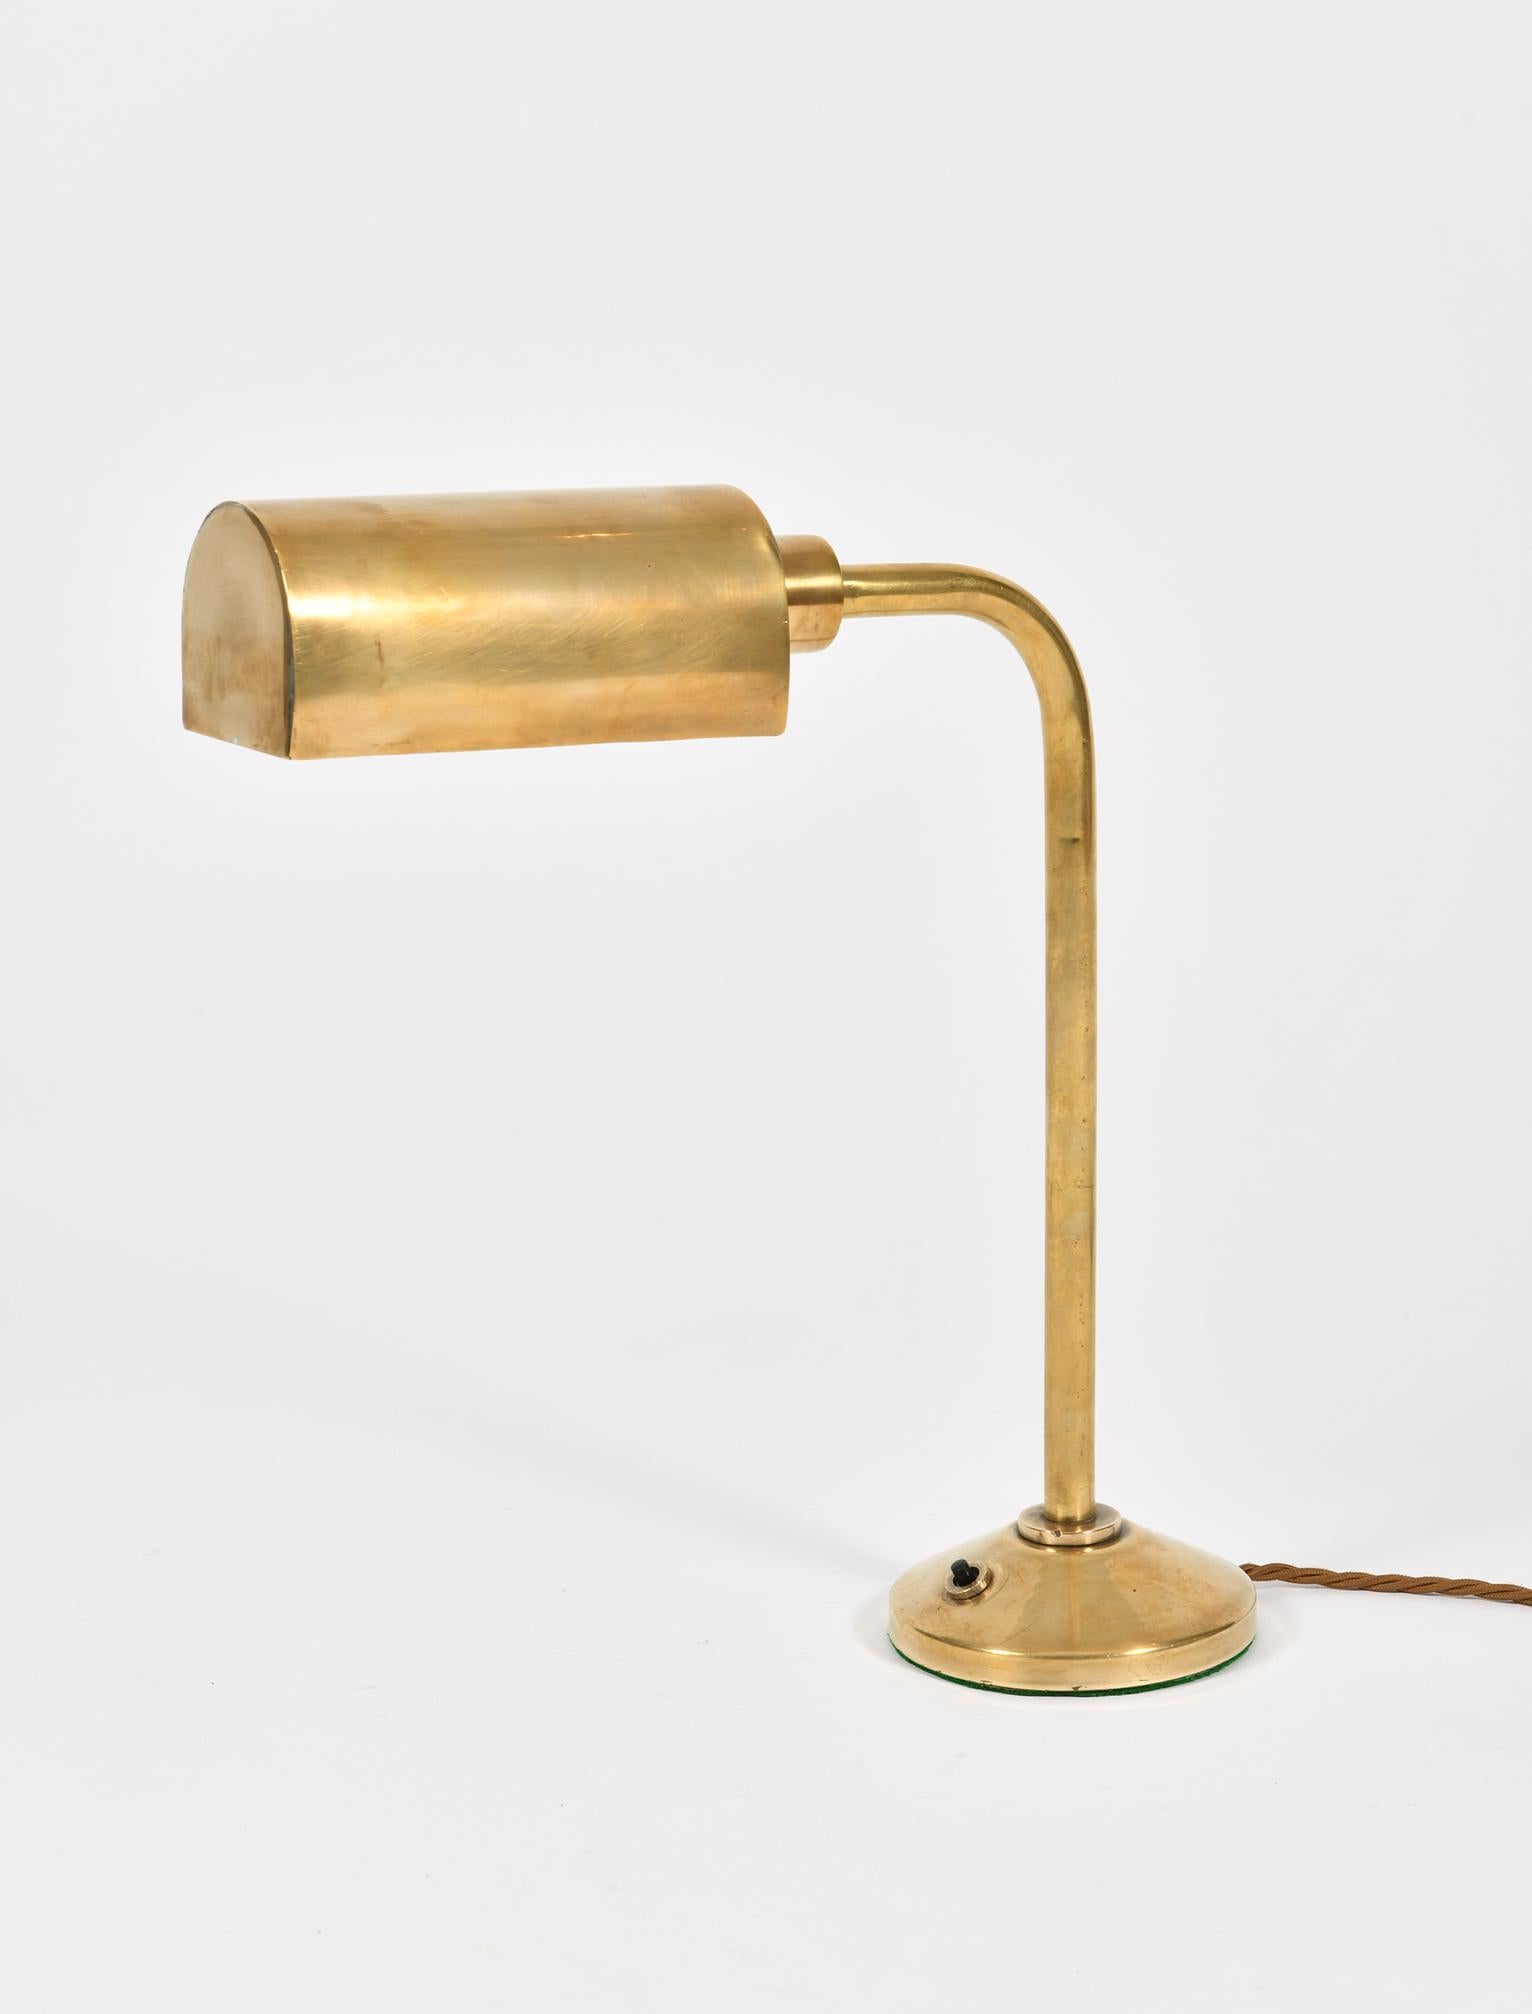 An Art Deco brass desk lamp
Franc, circa 1930.